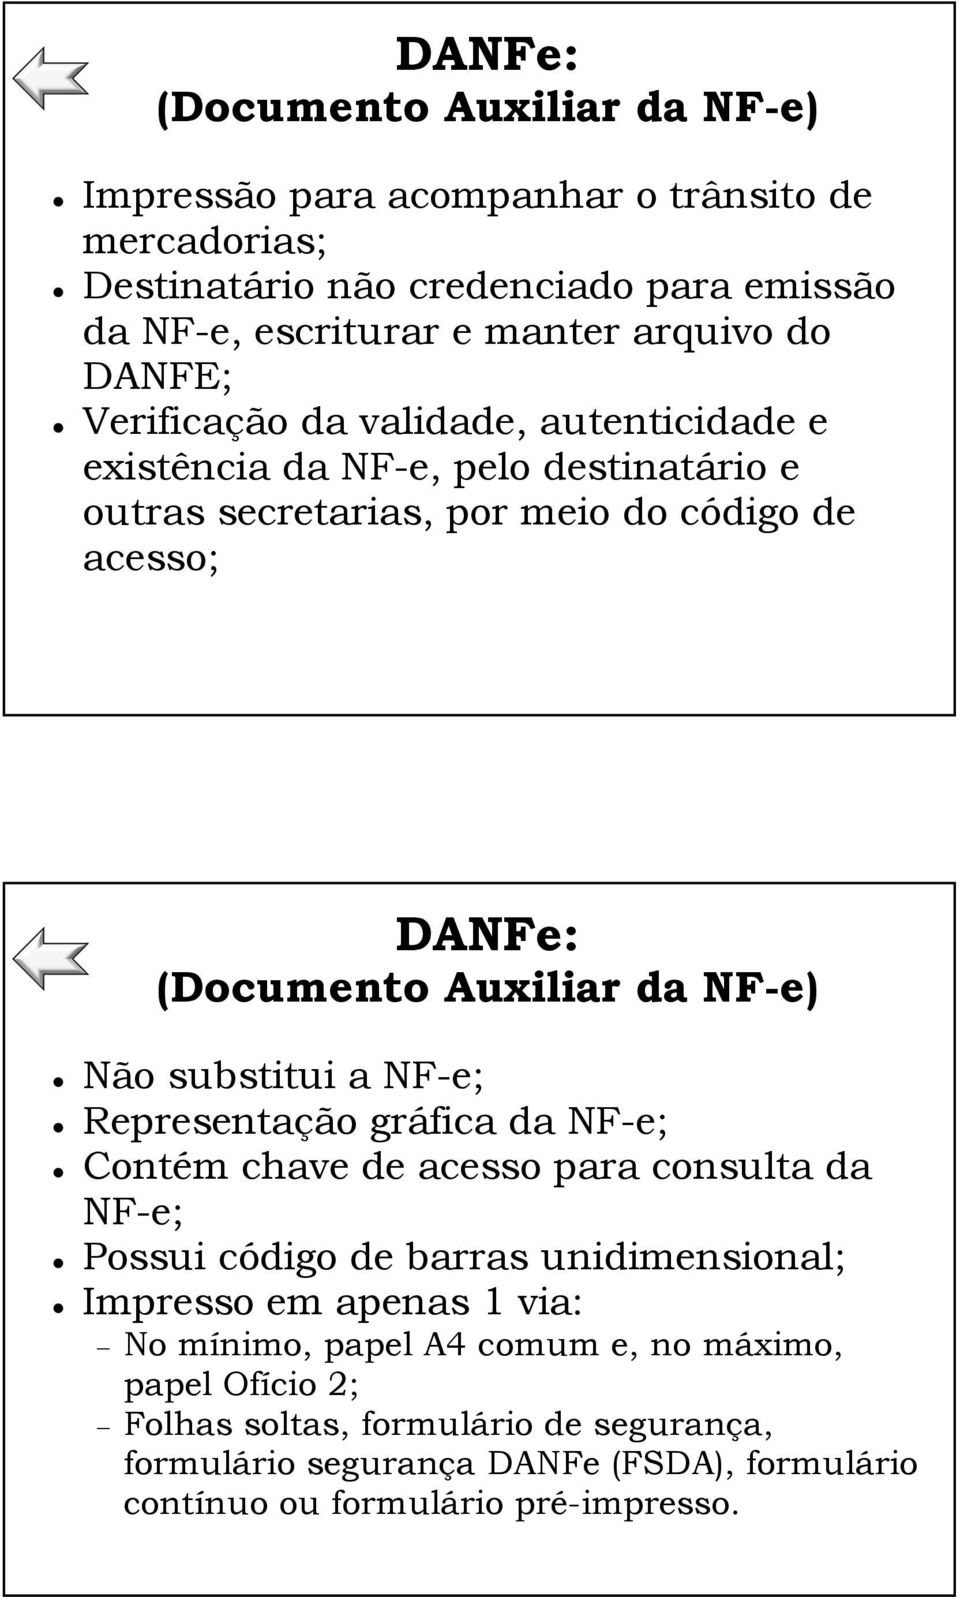 NF-e) Não substitui a NF-e; Representação gráfica da NF-e; Contém chave de acesso para consulta da NF-e; Possui código de barras unidimensional; Impresso em apenas 1